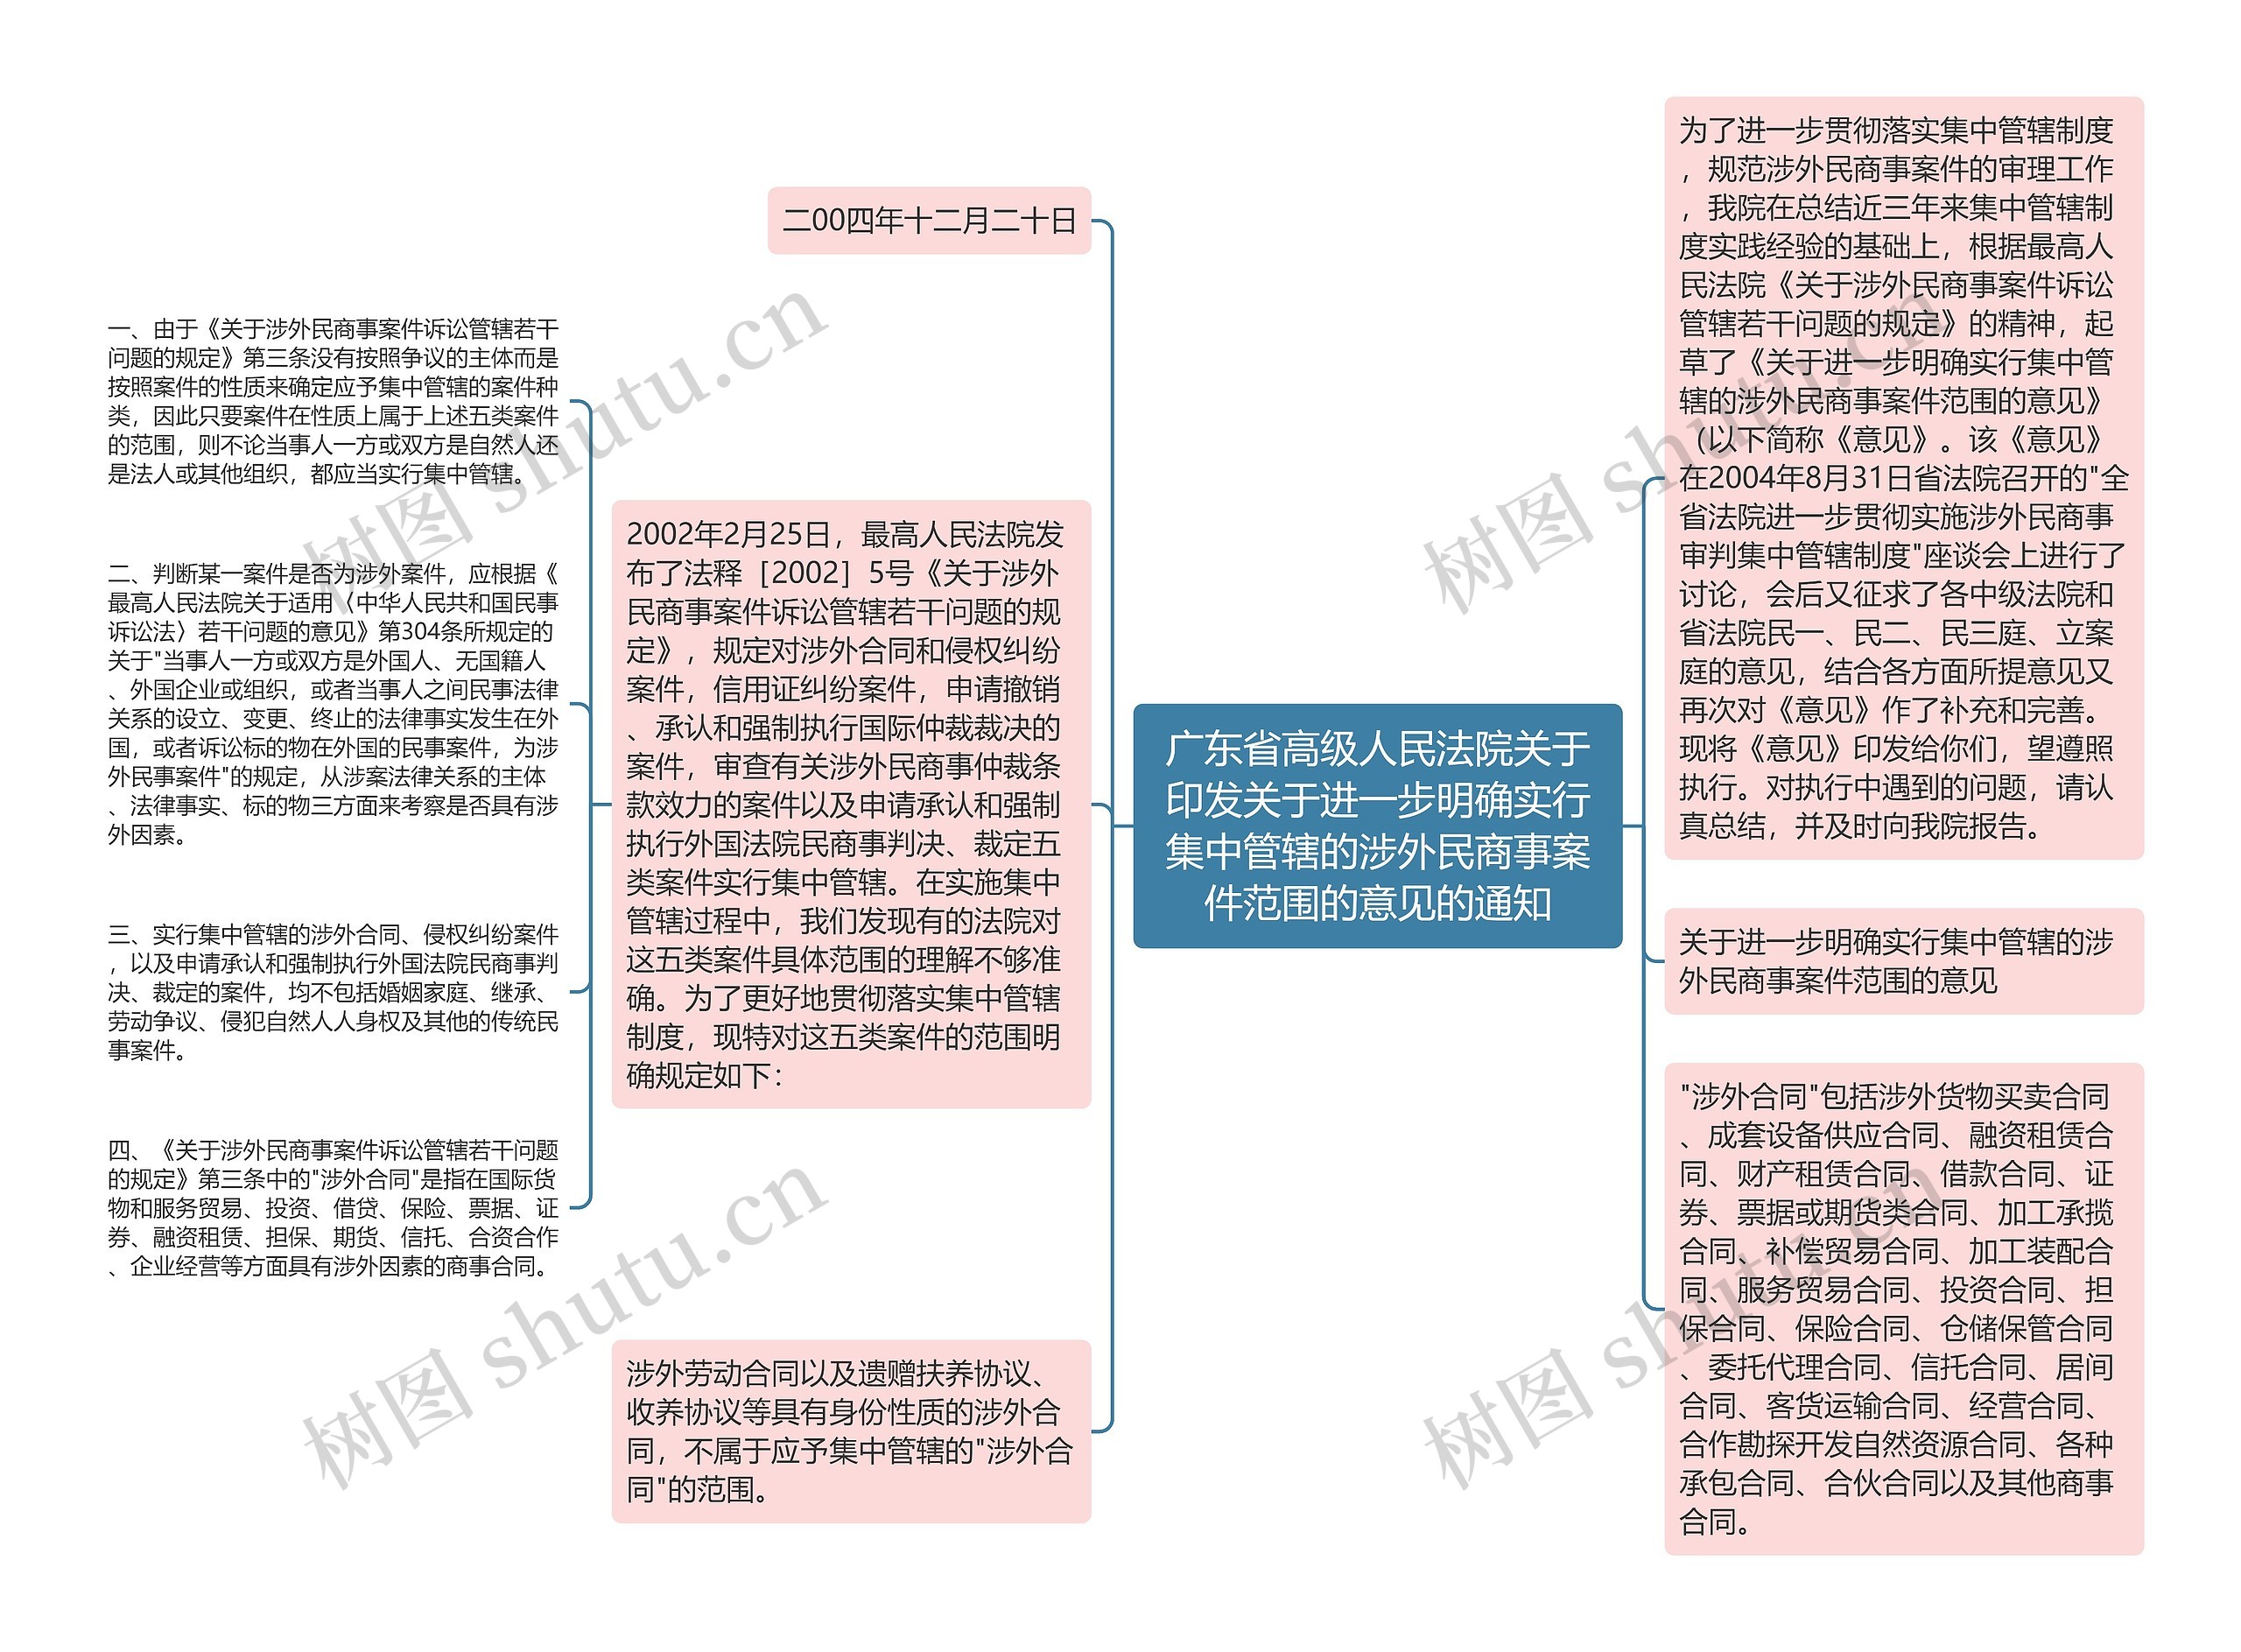 广东省高级人民法院关于印发关于进一步明确实行集中管辖的涉外民商事案件范围的意见的通知